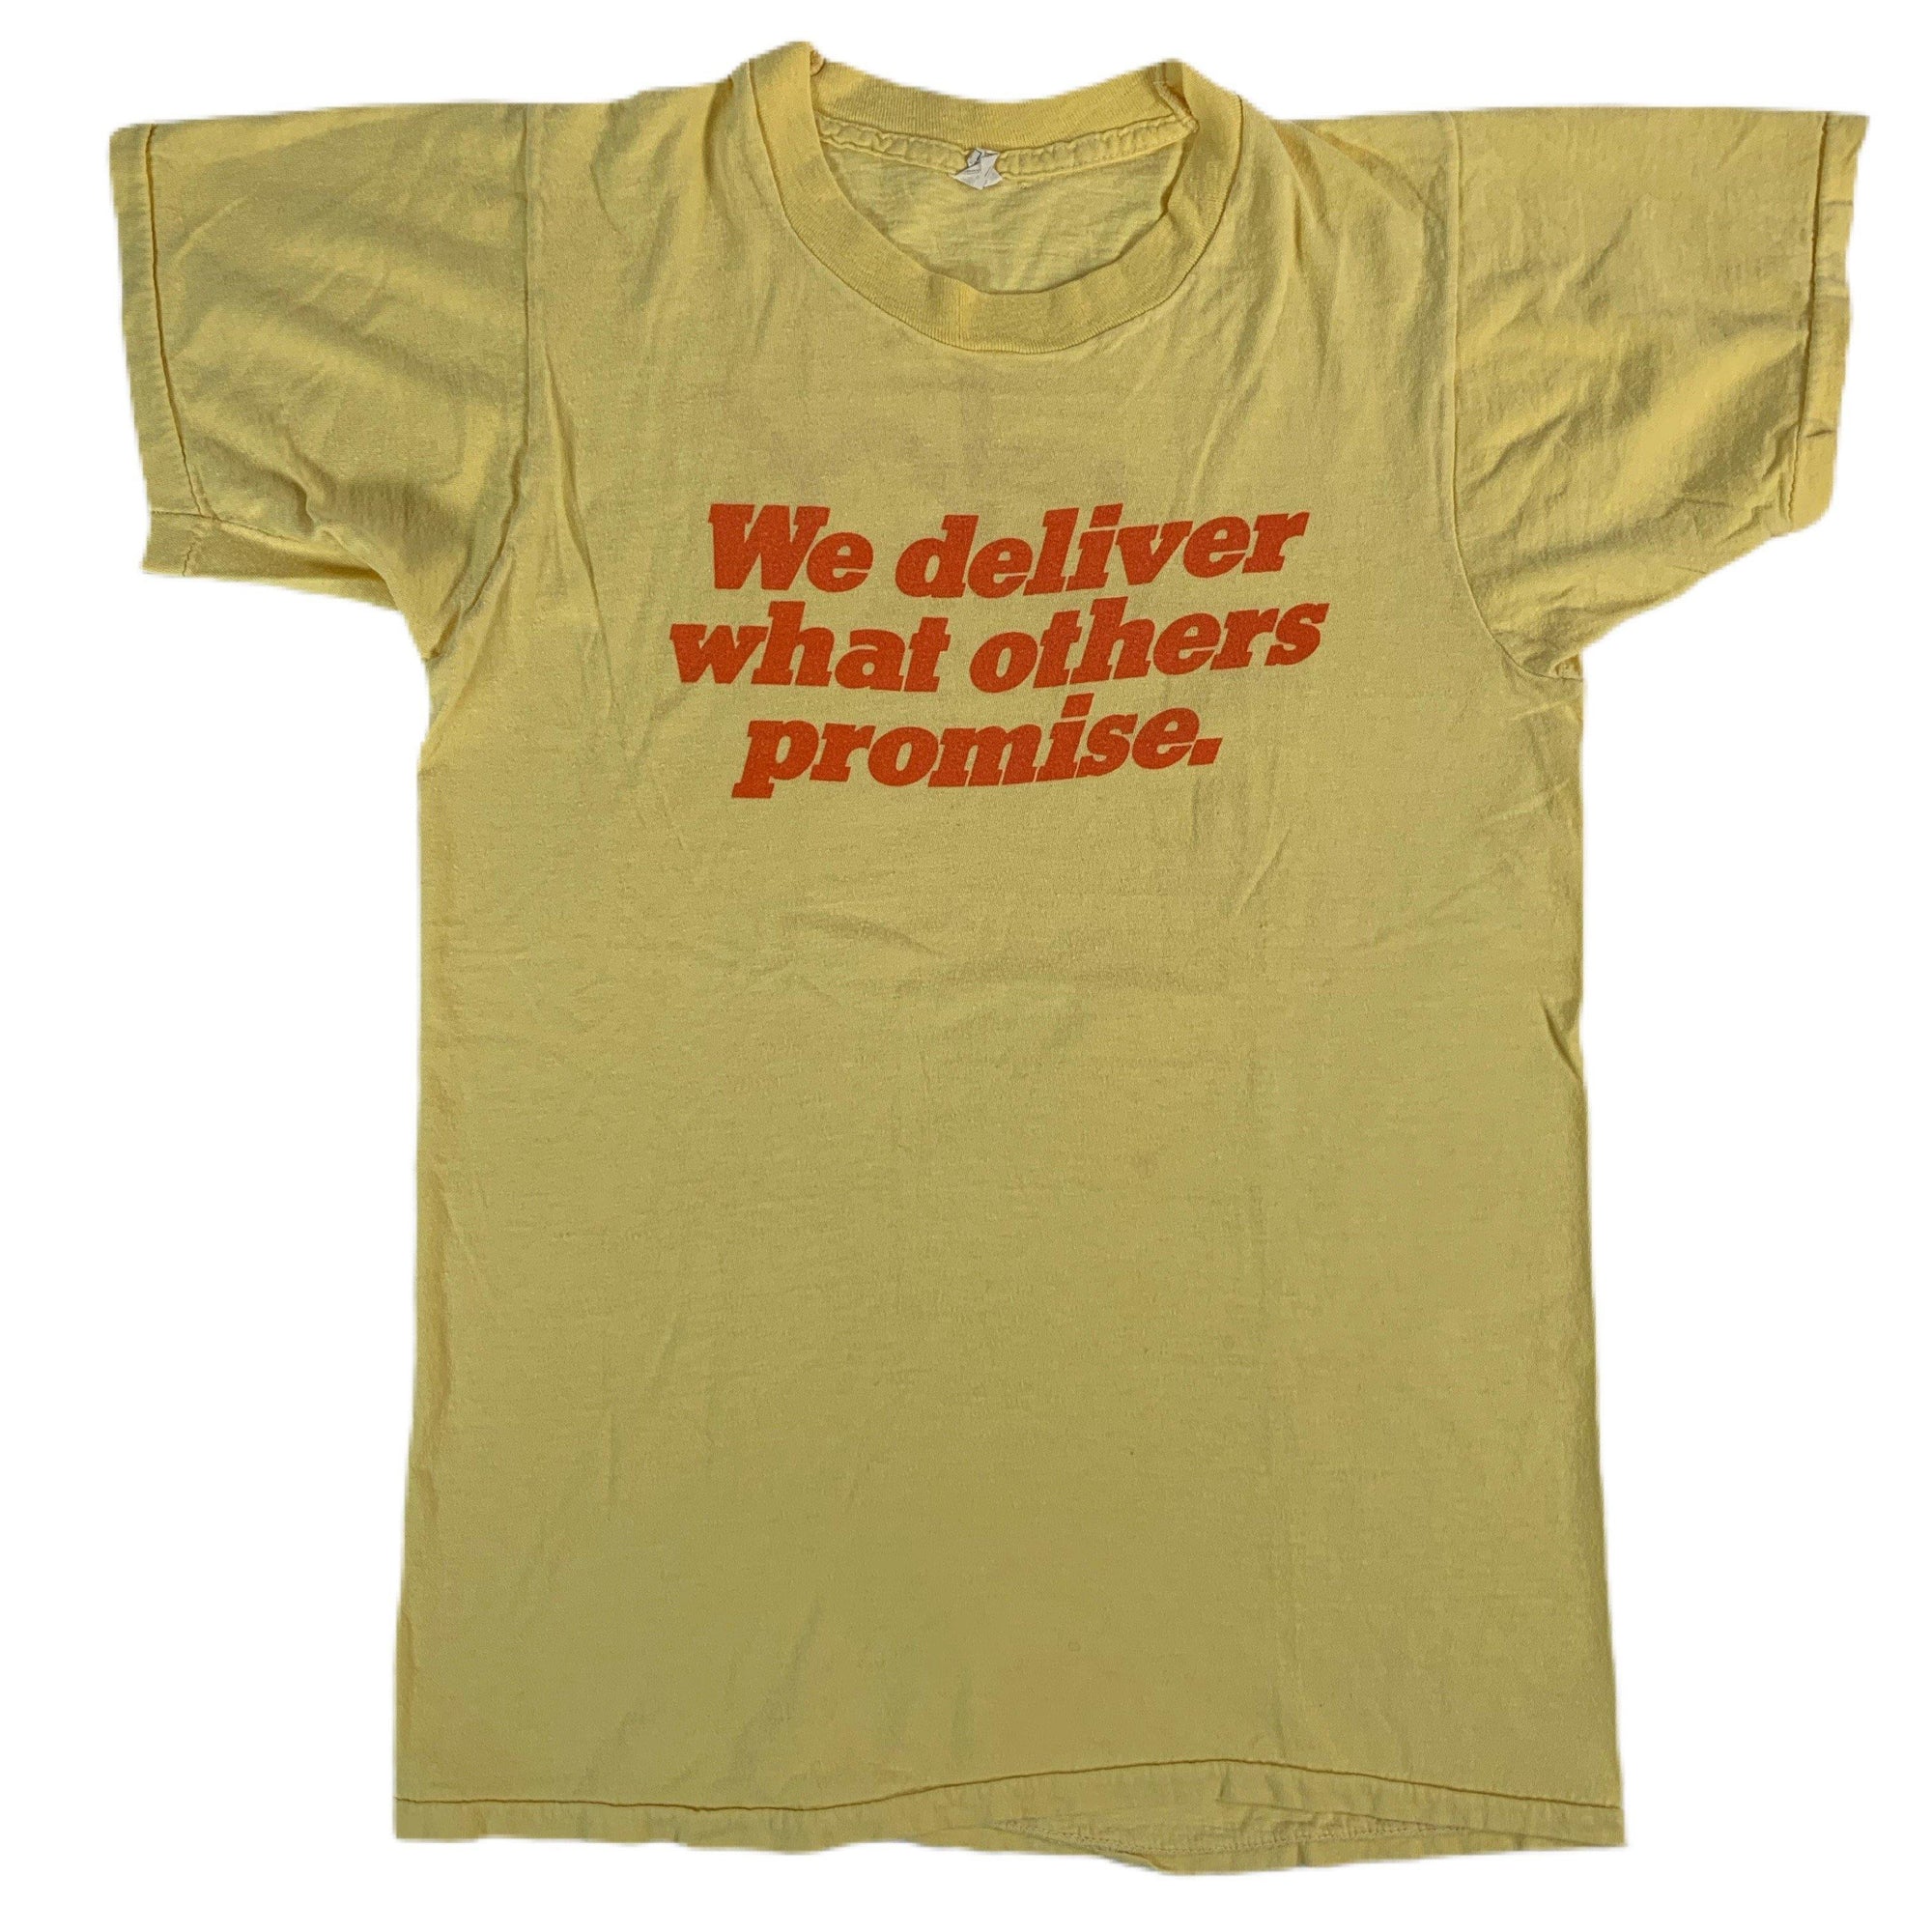 Vintage Sky Courier Network "We Deliver" T-Shirt - jointcustodydc